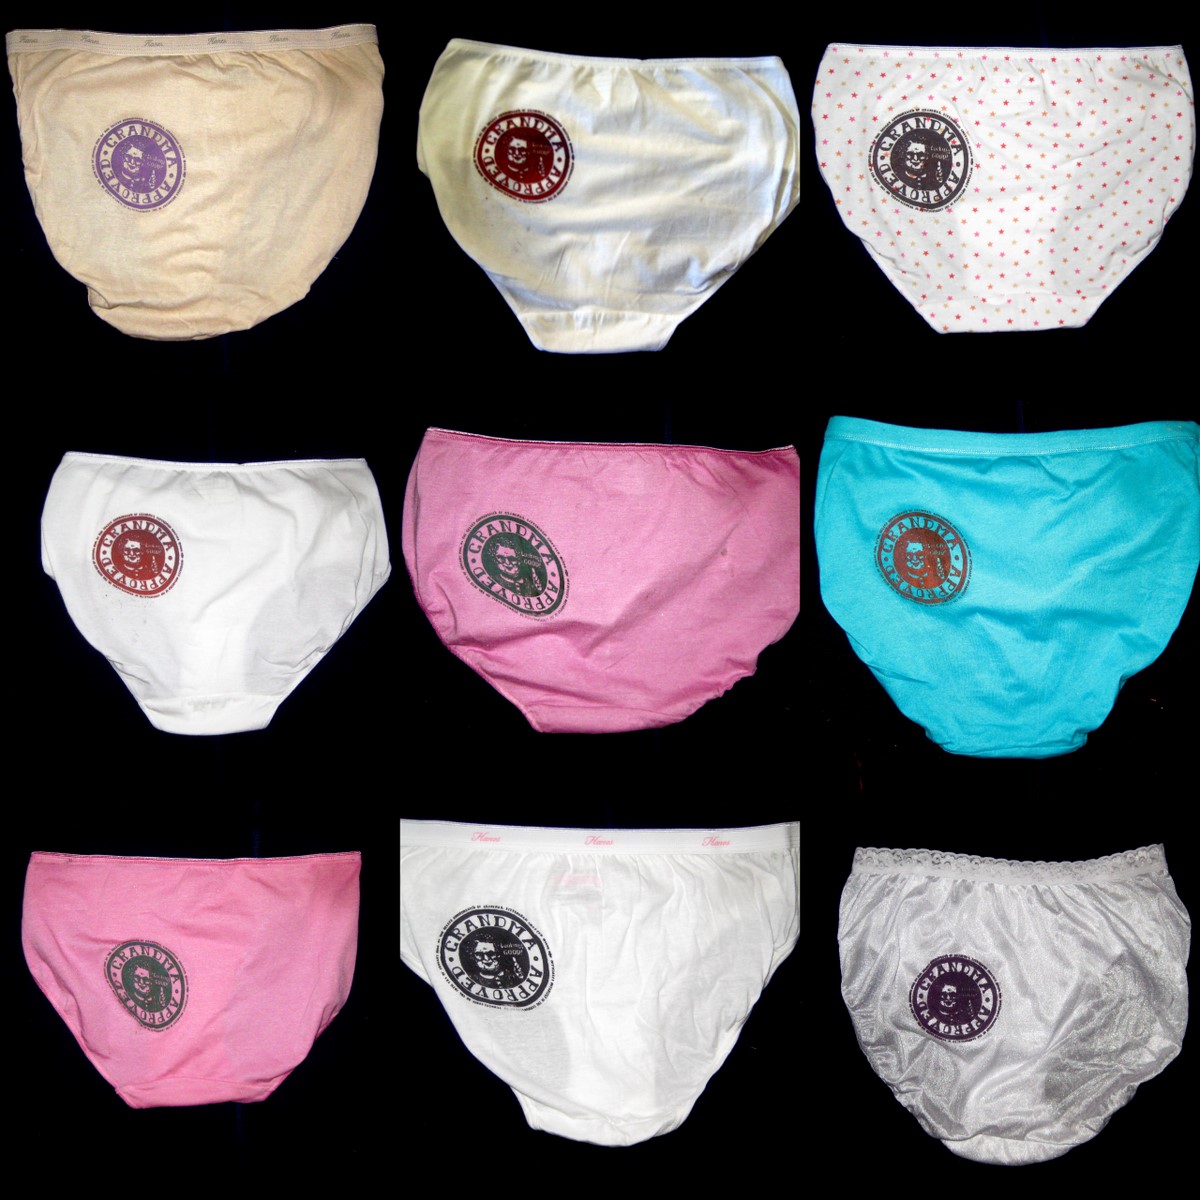 Razblint - Underwear - Grandma Approved Underwear